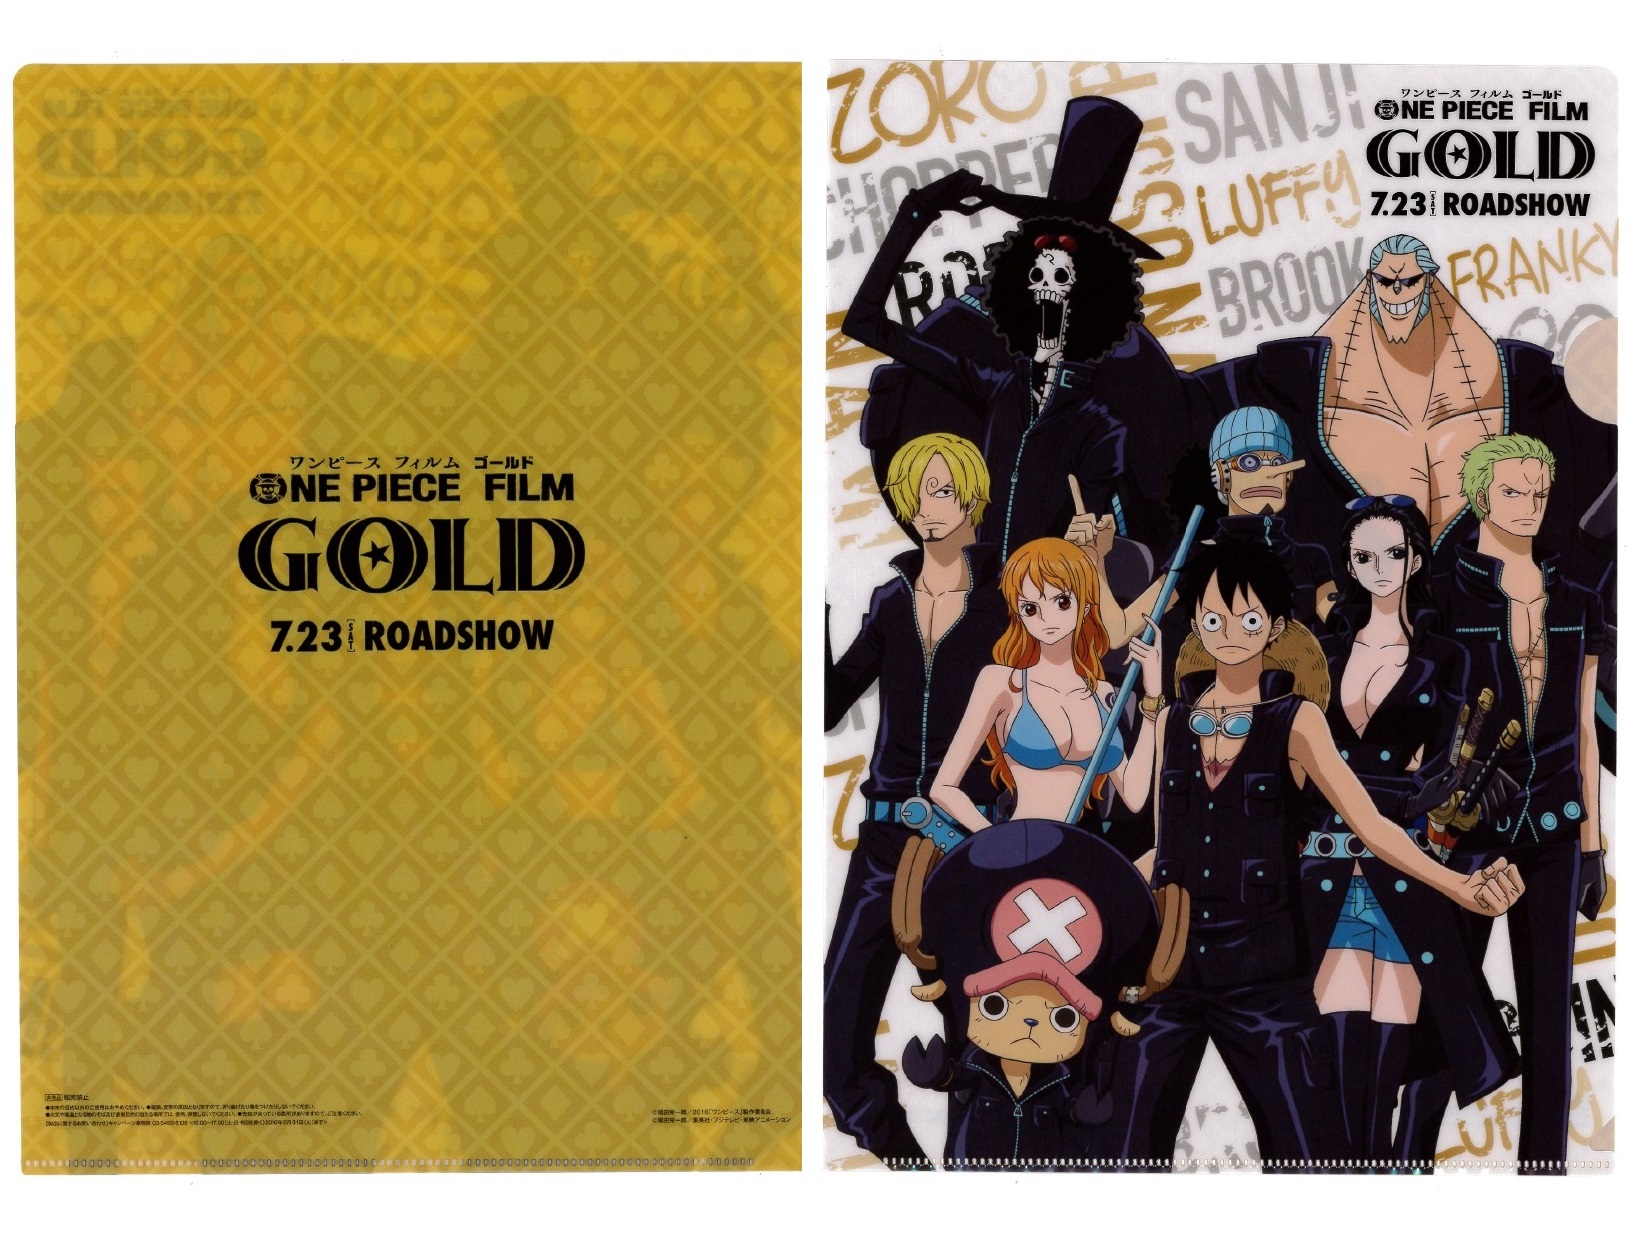 セブンイレブン ワンピース One Piece Film Gold クリアファイル プレゼント おまけカオスな日々